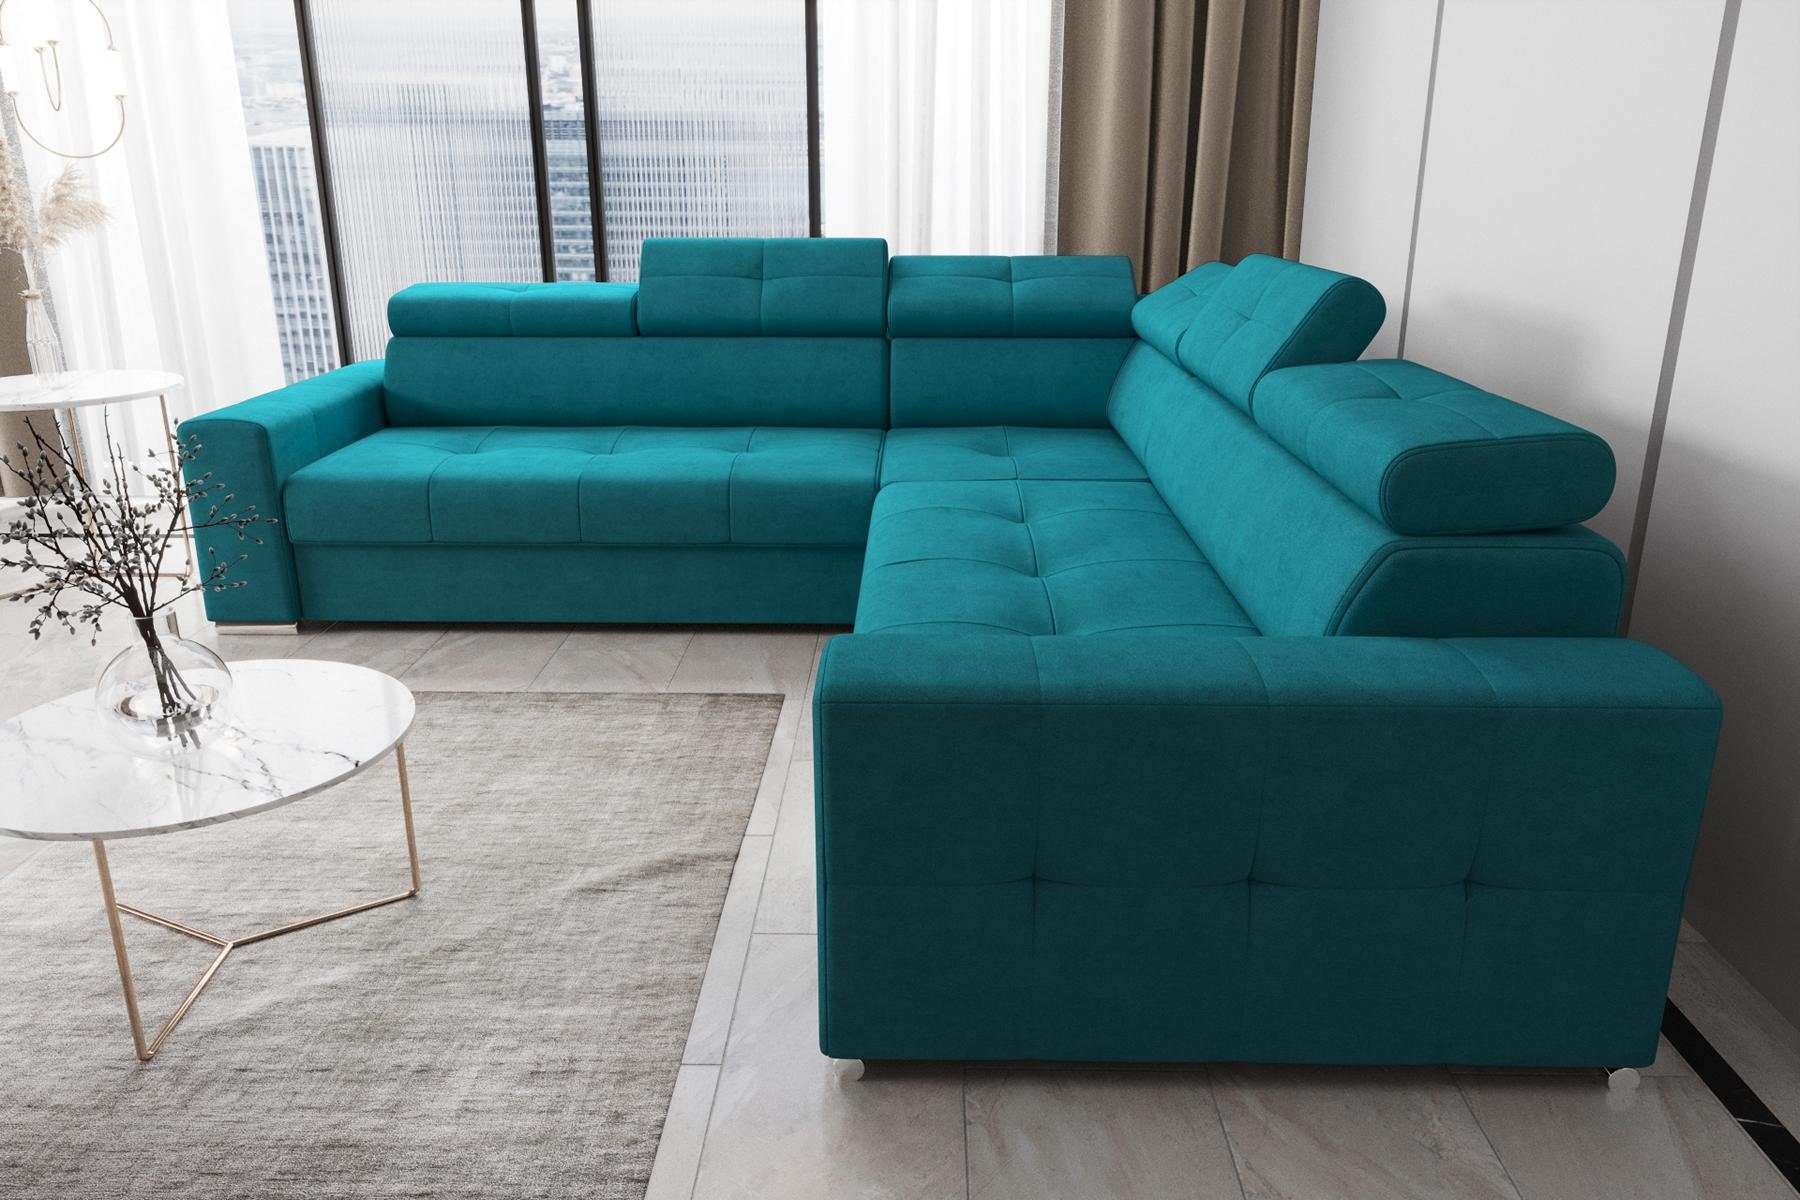 JVmoebel Ecksofa Wohnzimmer Textil Leder Luxus L Form Modern Ecksofa Couch, Made in Europe Blau